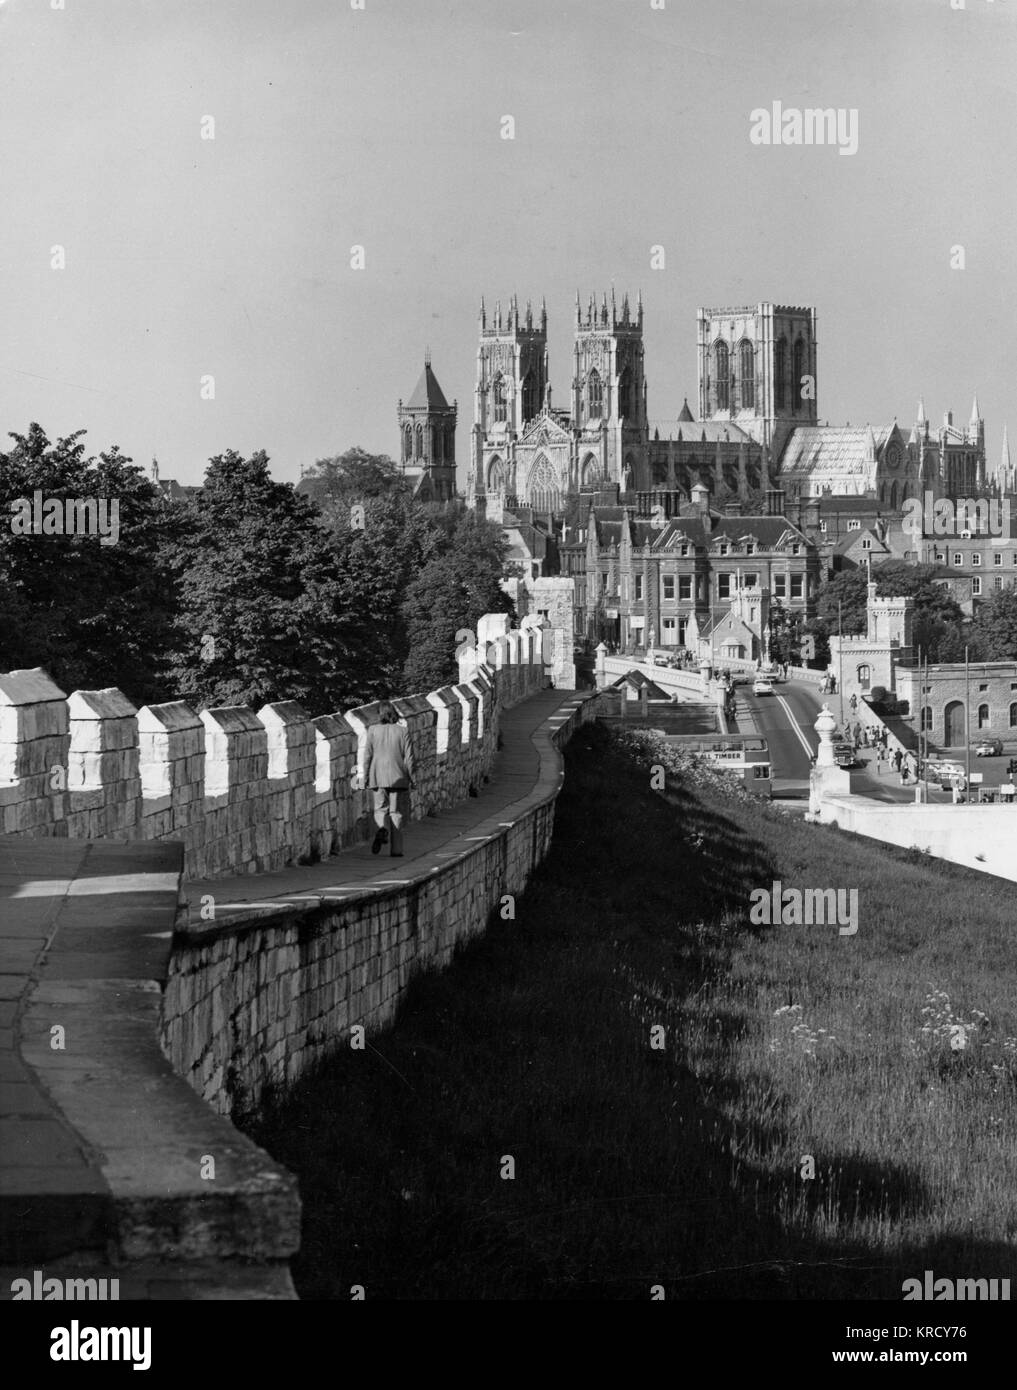 Una hermosa vista de la histórica ciudad de York, mirando al Noreste de las murallas de la ciudad hacia la Catedral de York. Fecha: 1970 Foto de stock